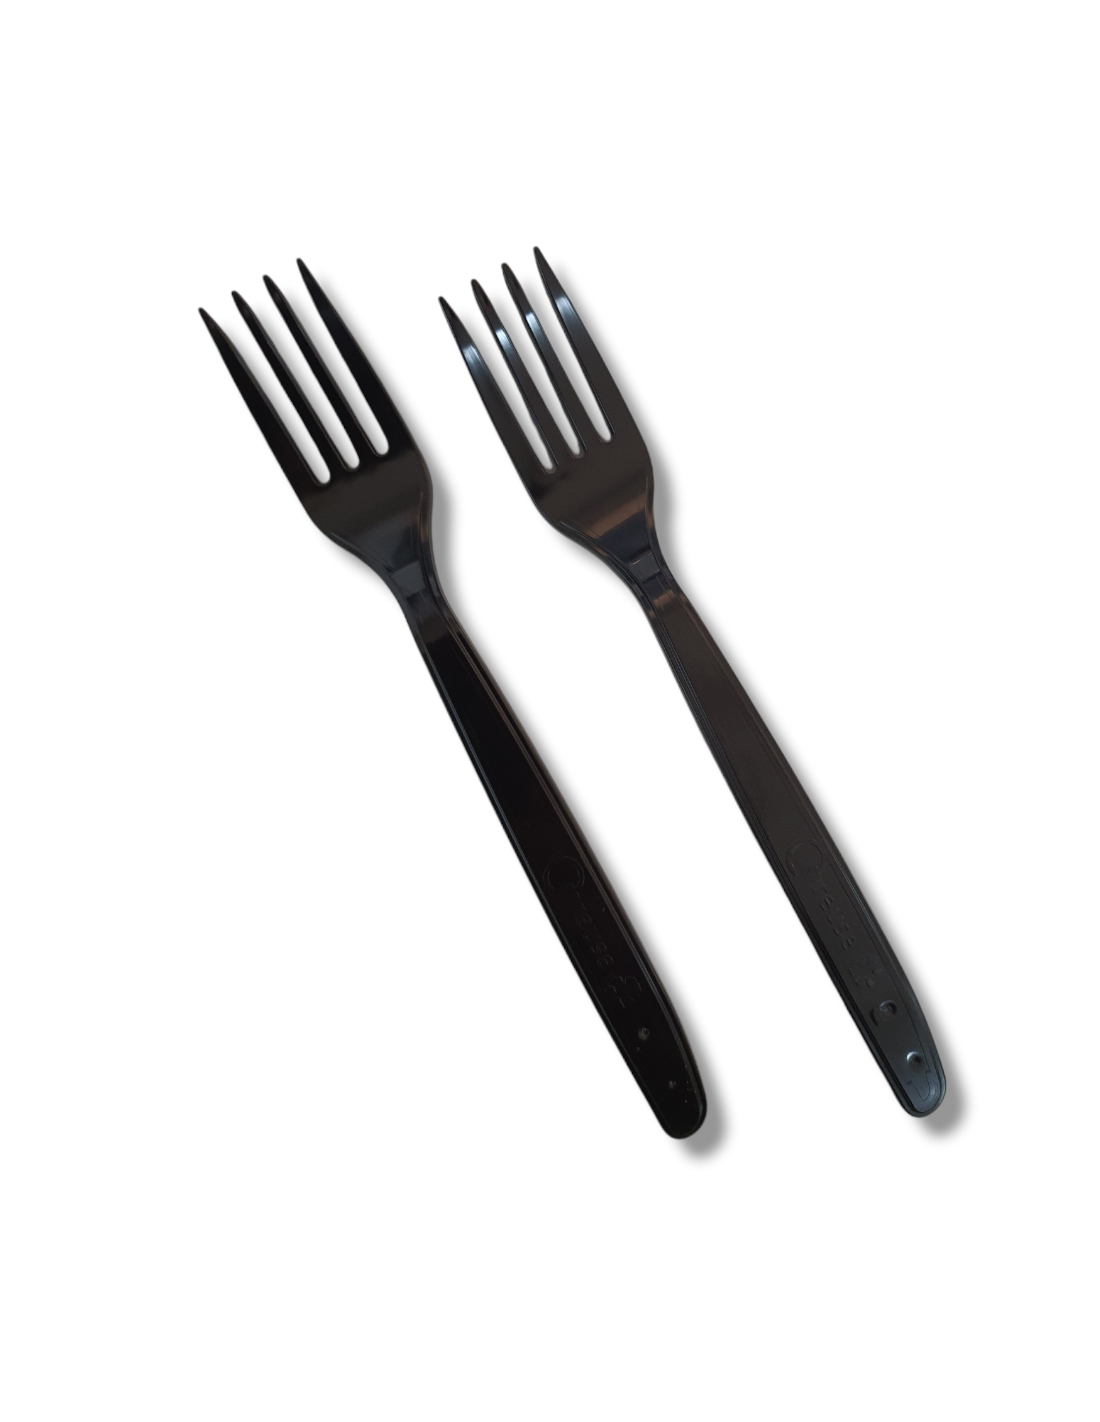 Tenedores de Plástico Desechables Negros 165mm Comprar Online